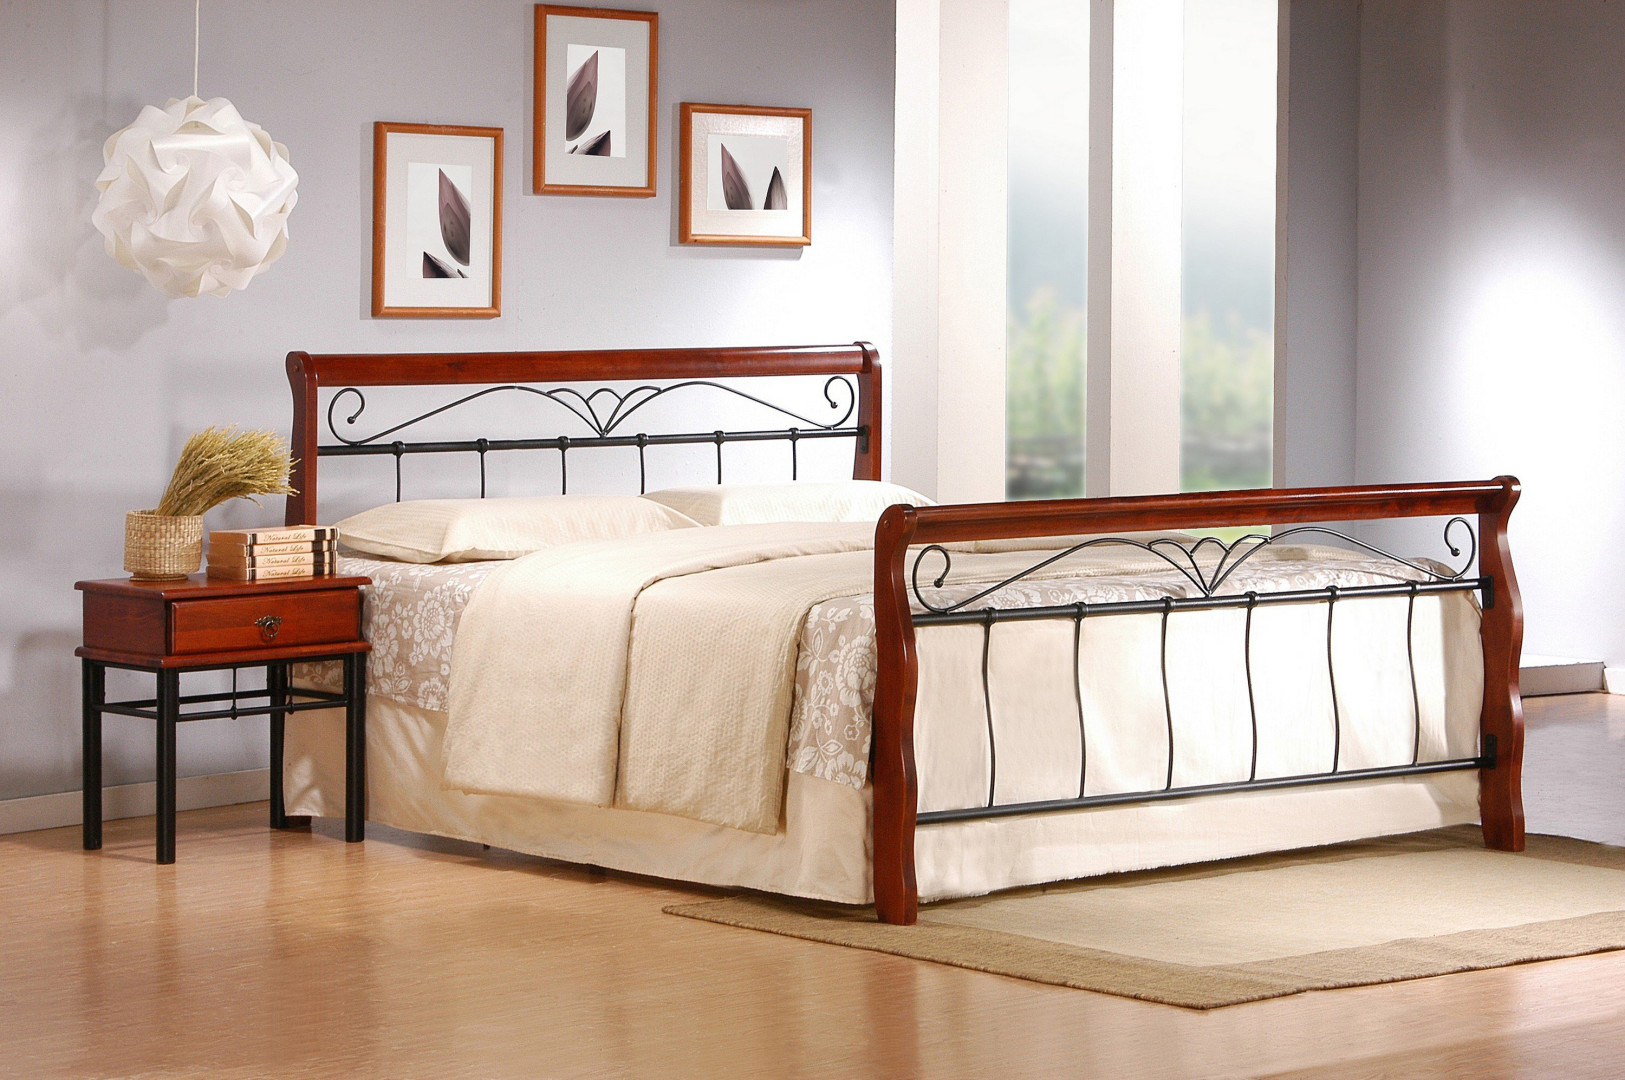 Produkt w kategorii: Łóżka, nazwa produktu: Łóżko Veronica 160 - metalowa rama